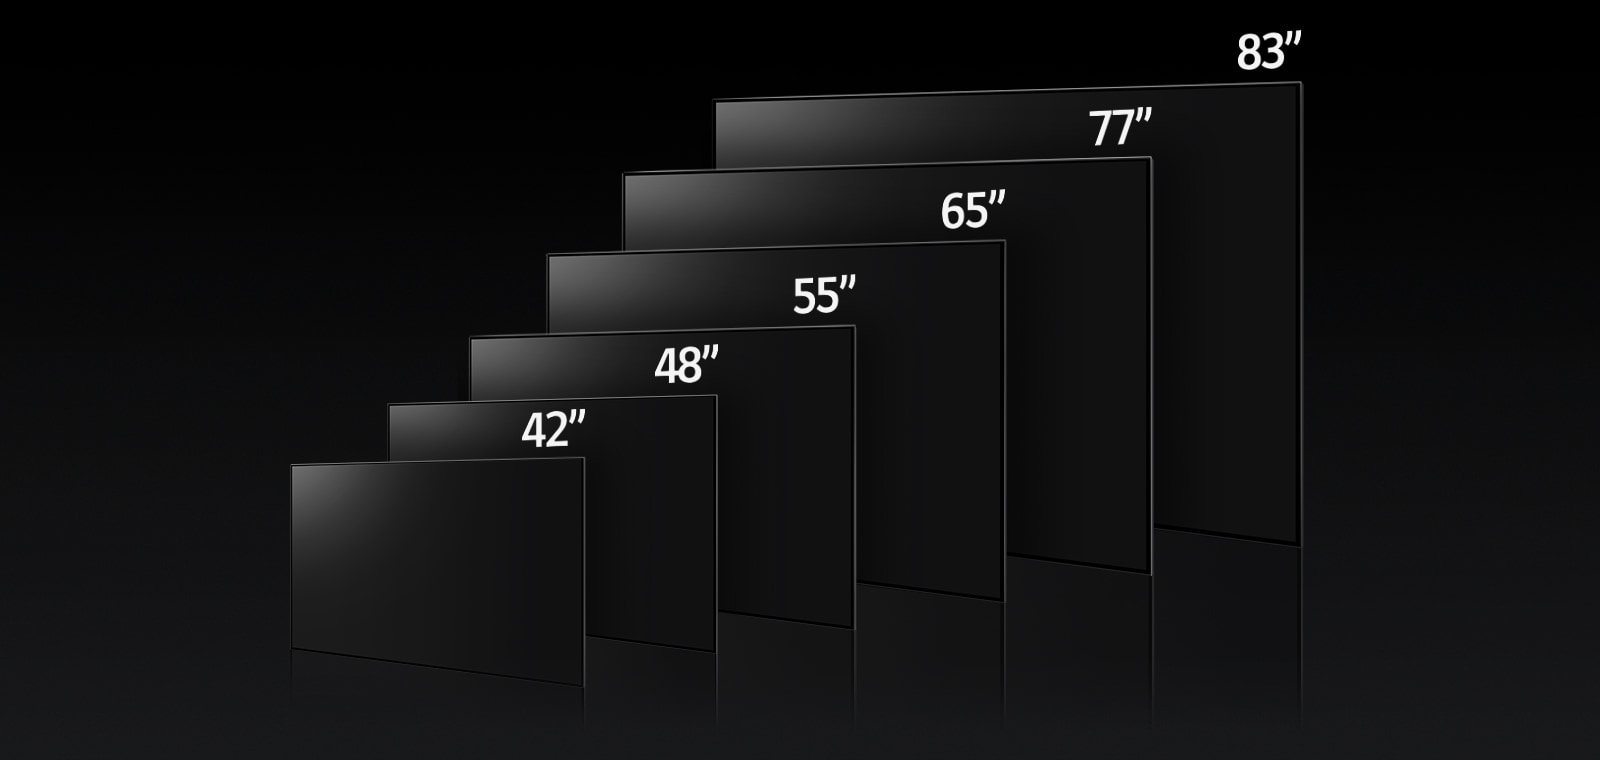 Kép, amely az LG OLED C3 különböző méreteit (42